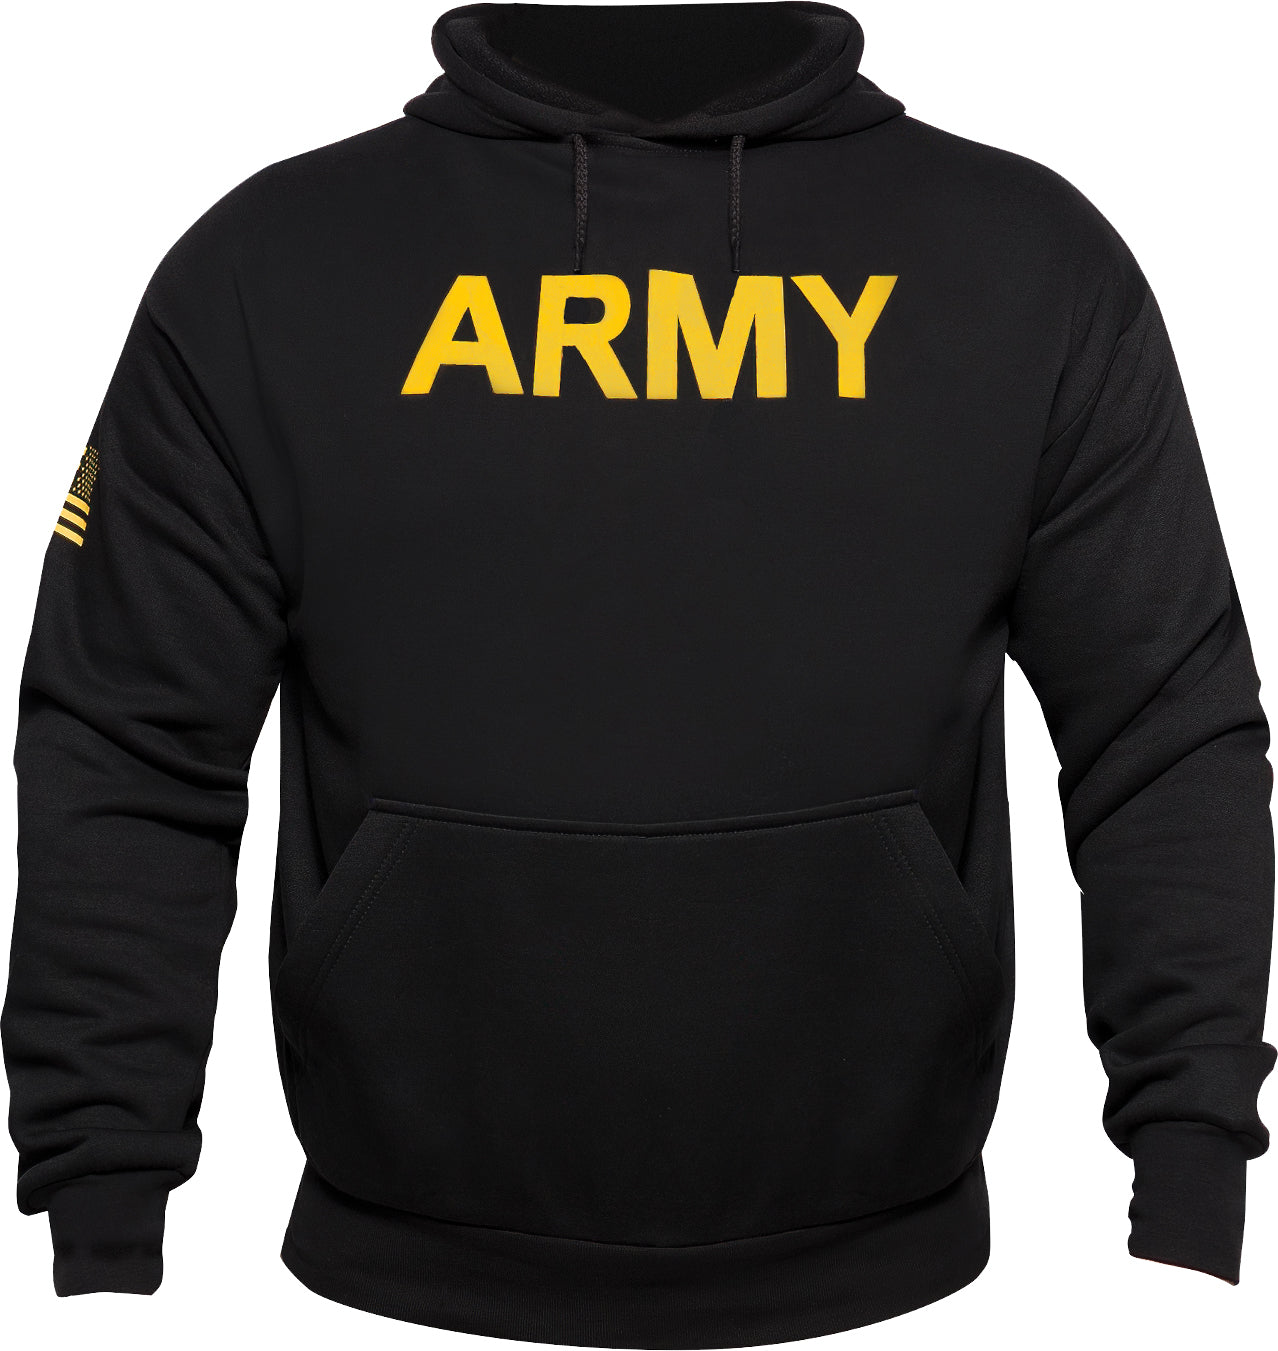 Black - Army Printed Pullover Hoodie